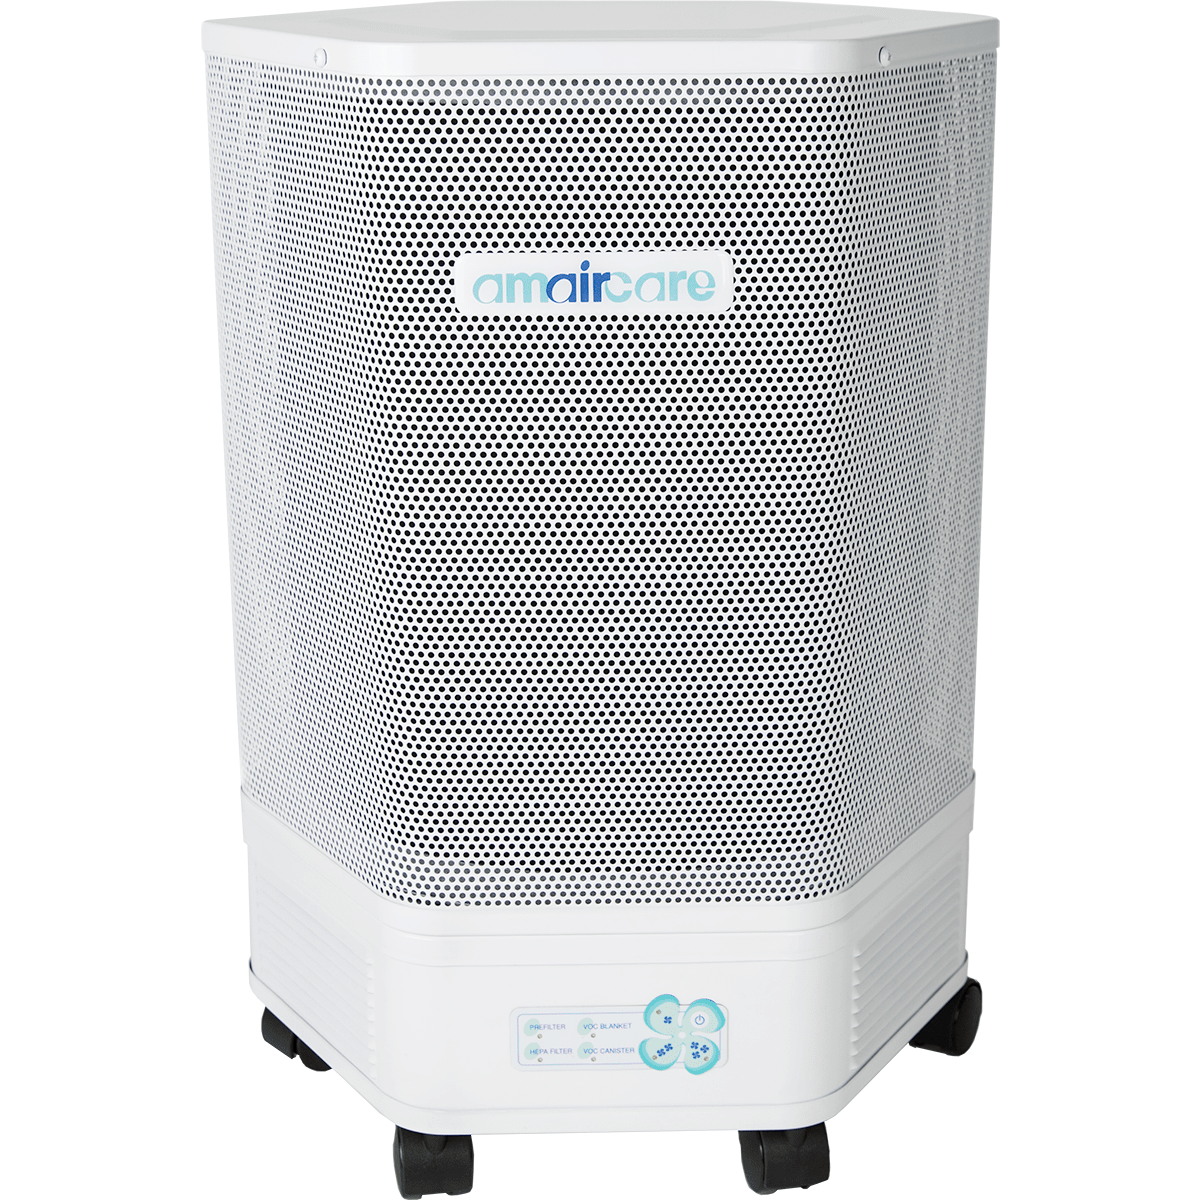 Amaircare 3000 HEPA Air Purifier - White